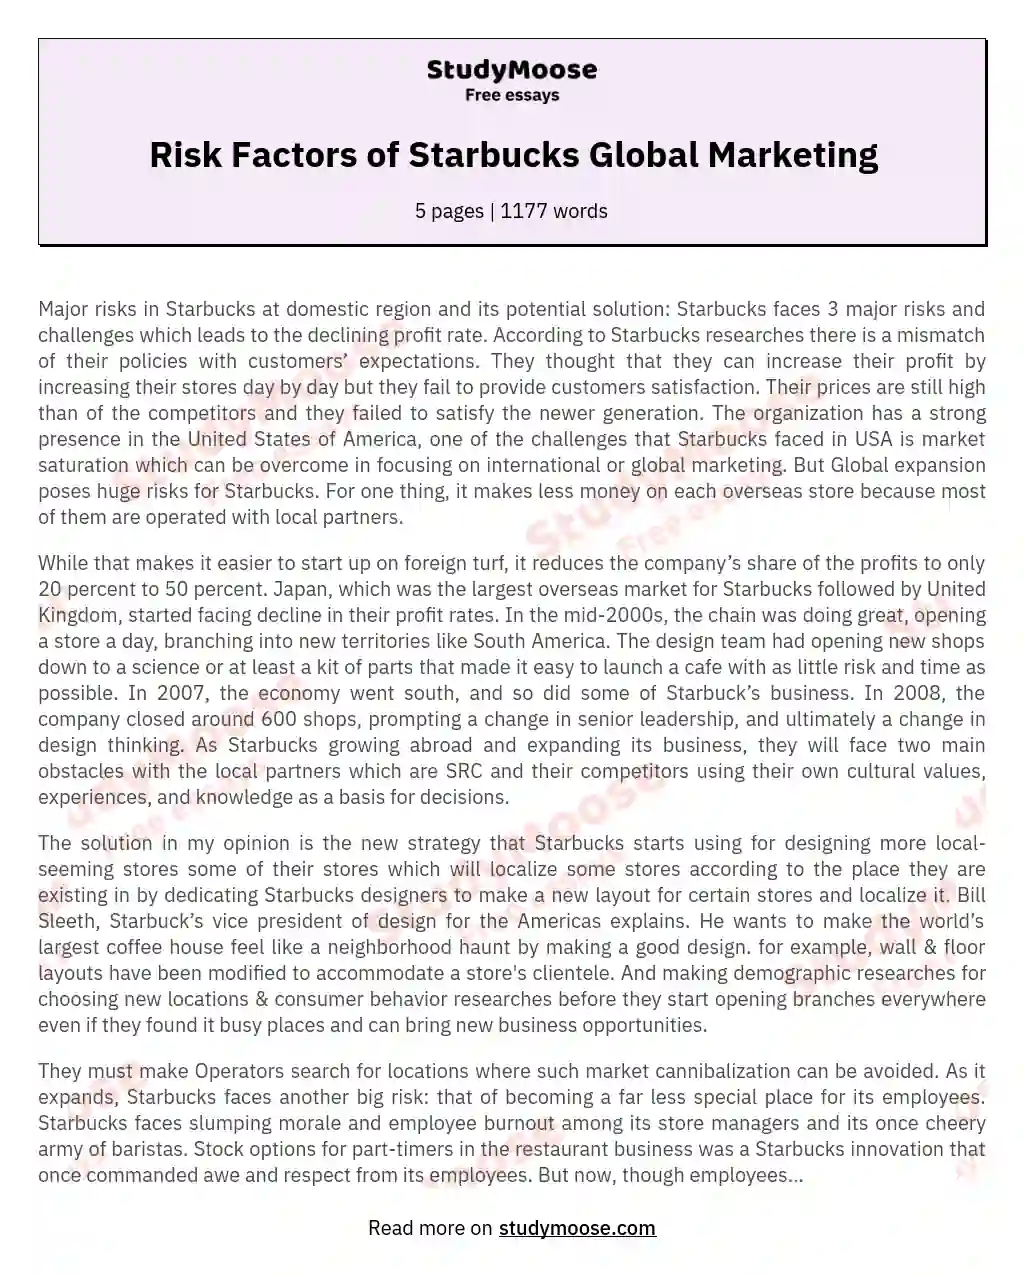 Risk Factors of Starbucks Global Marketing